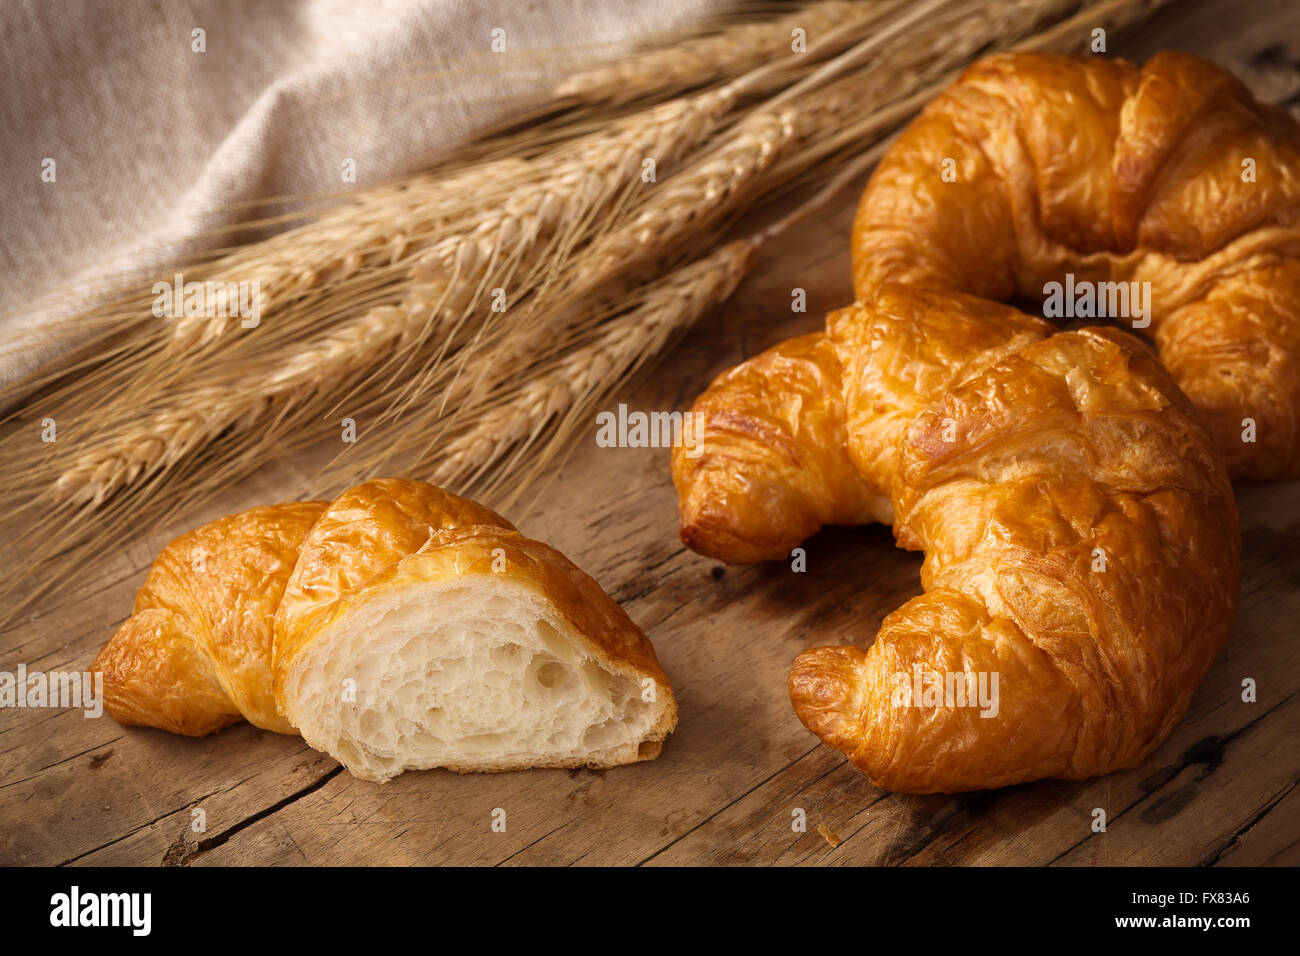 La vie toujours croissants savoureux fond rustique en bois petit-déjeuner brunch boulangerie Banque D'Images